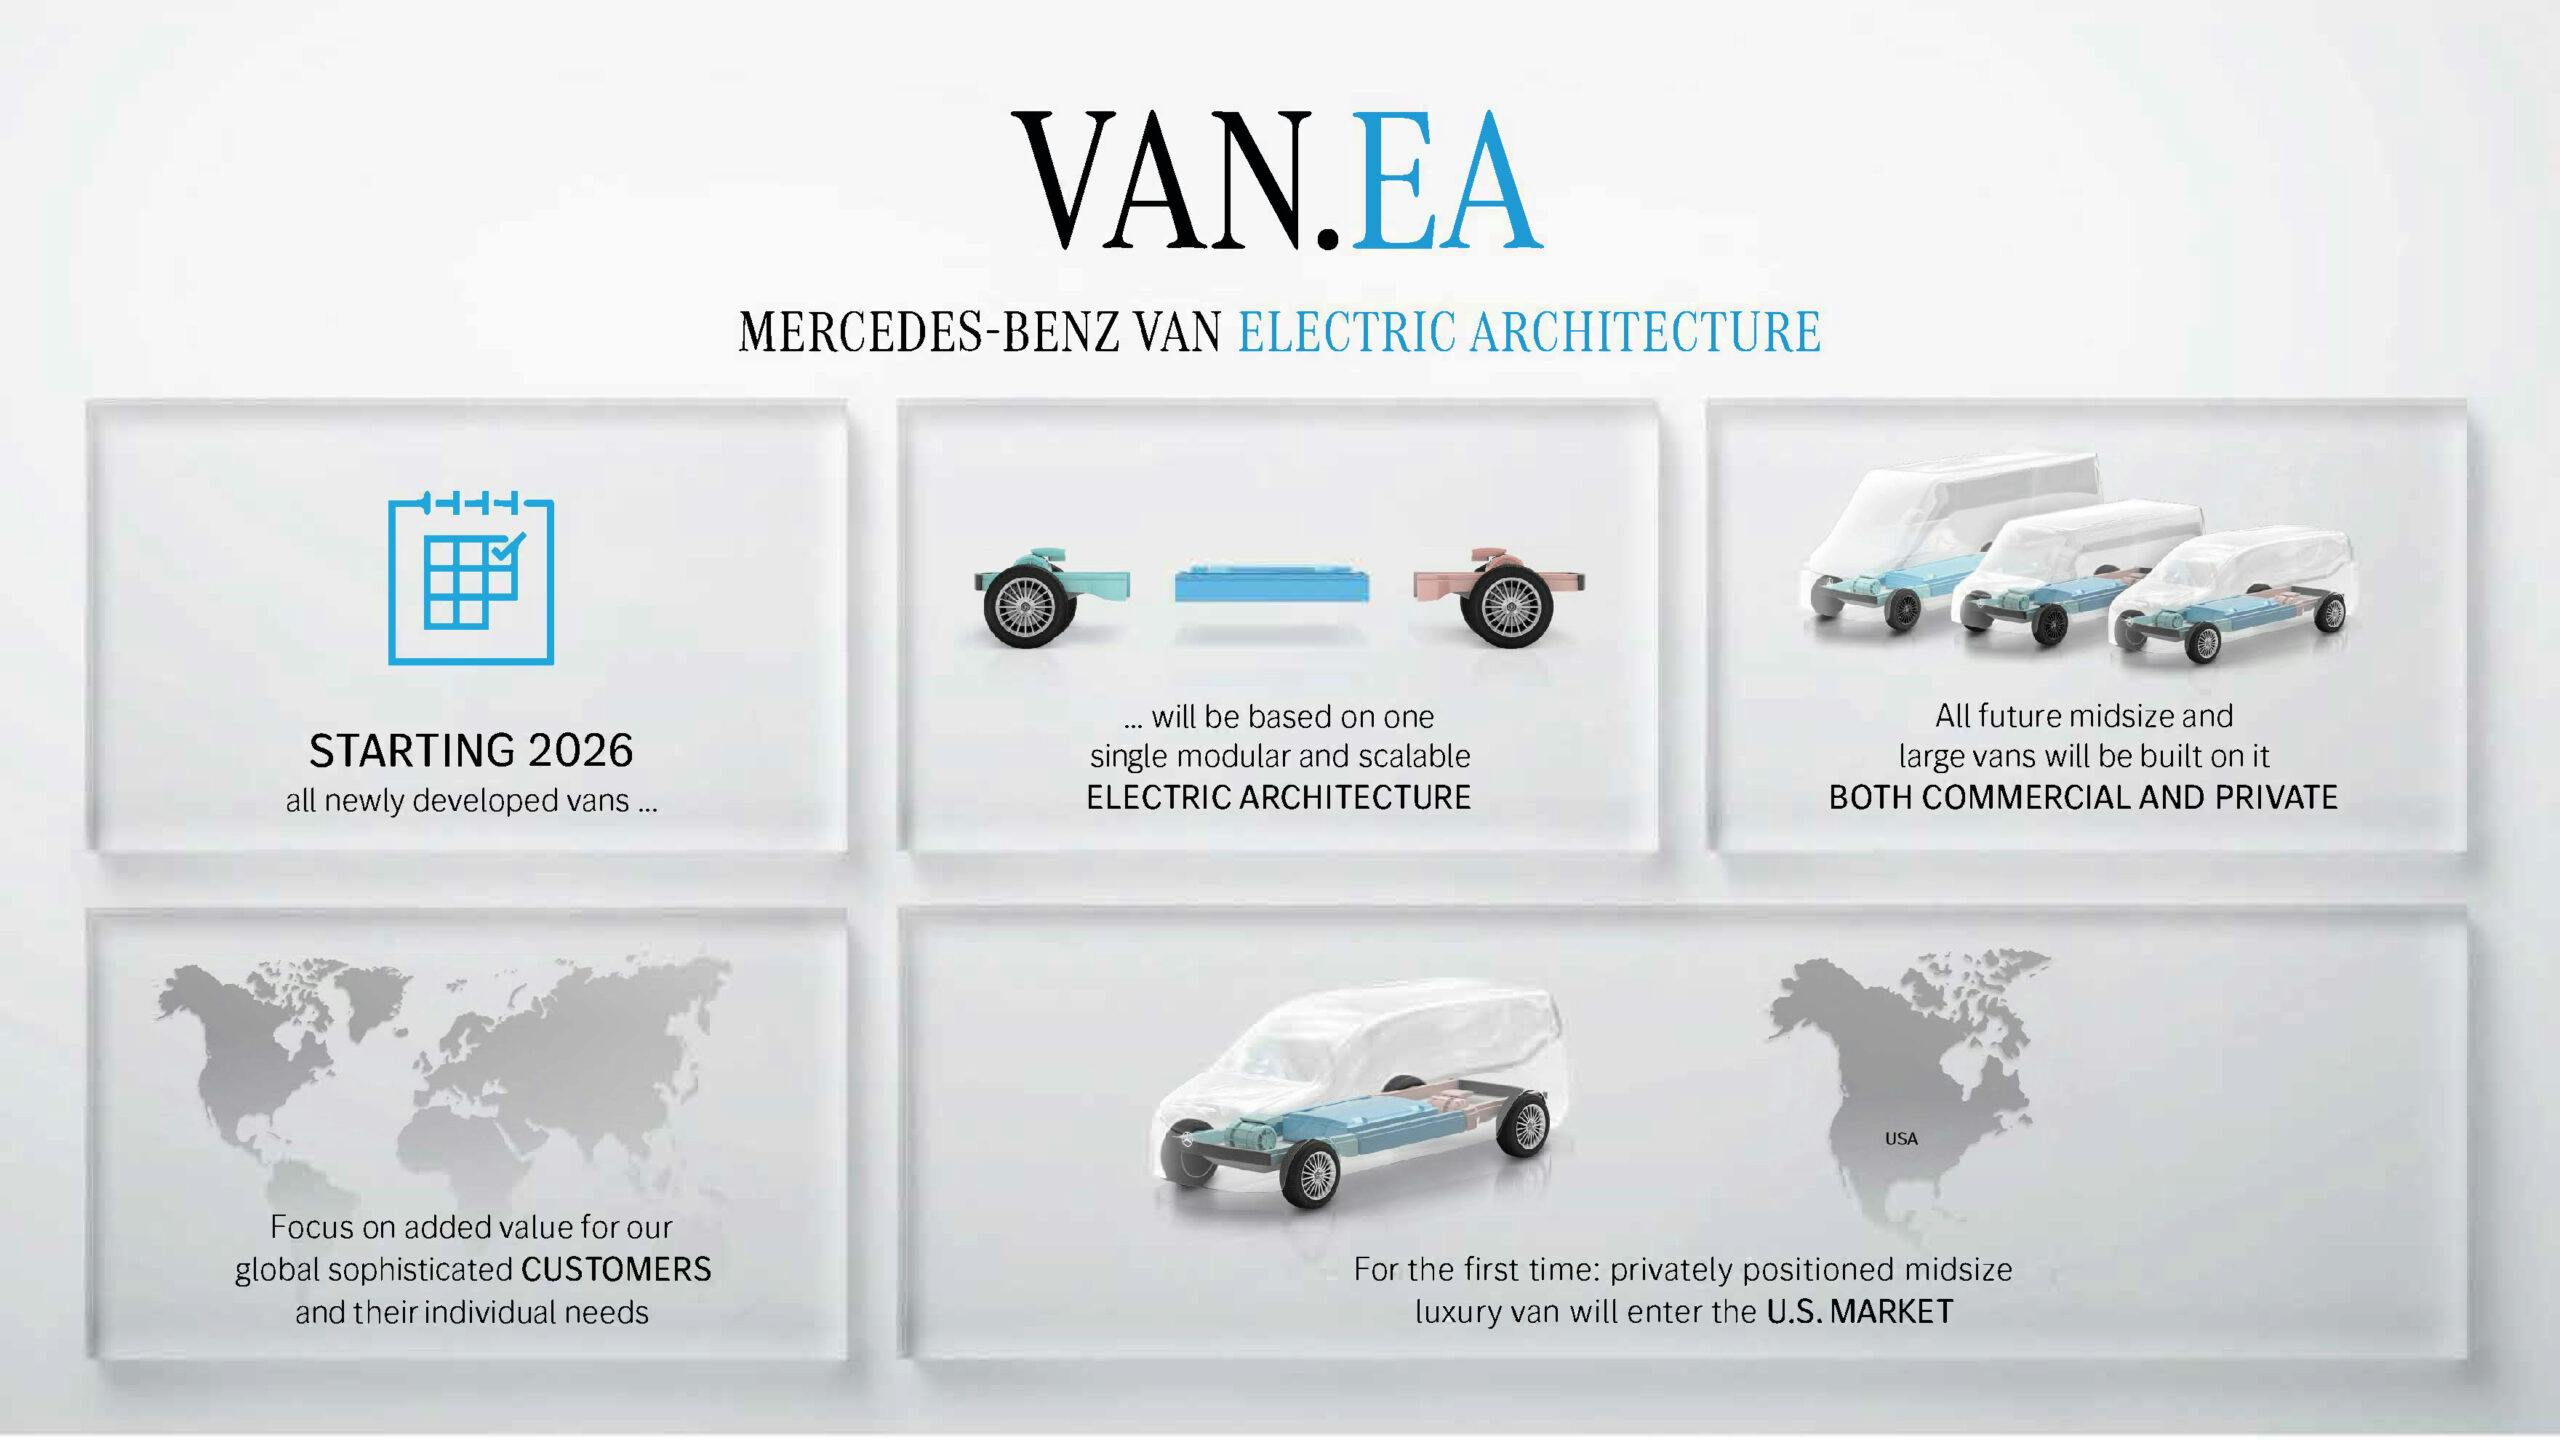 Mercedes-Benz VAN.EA architecture rollout plan